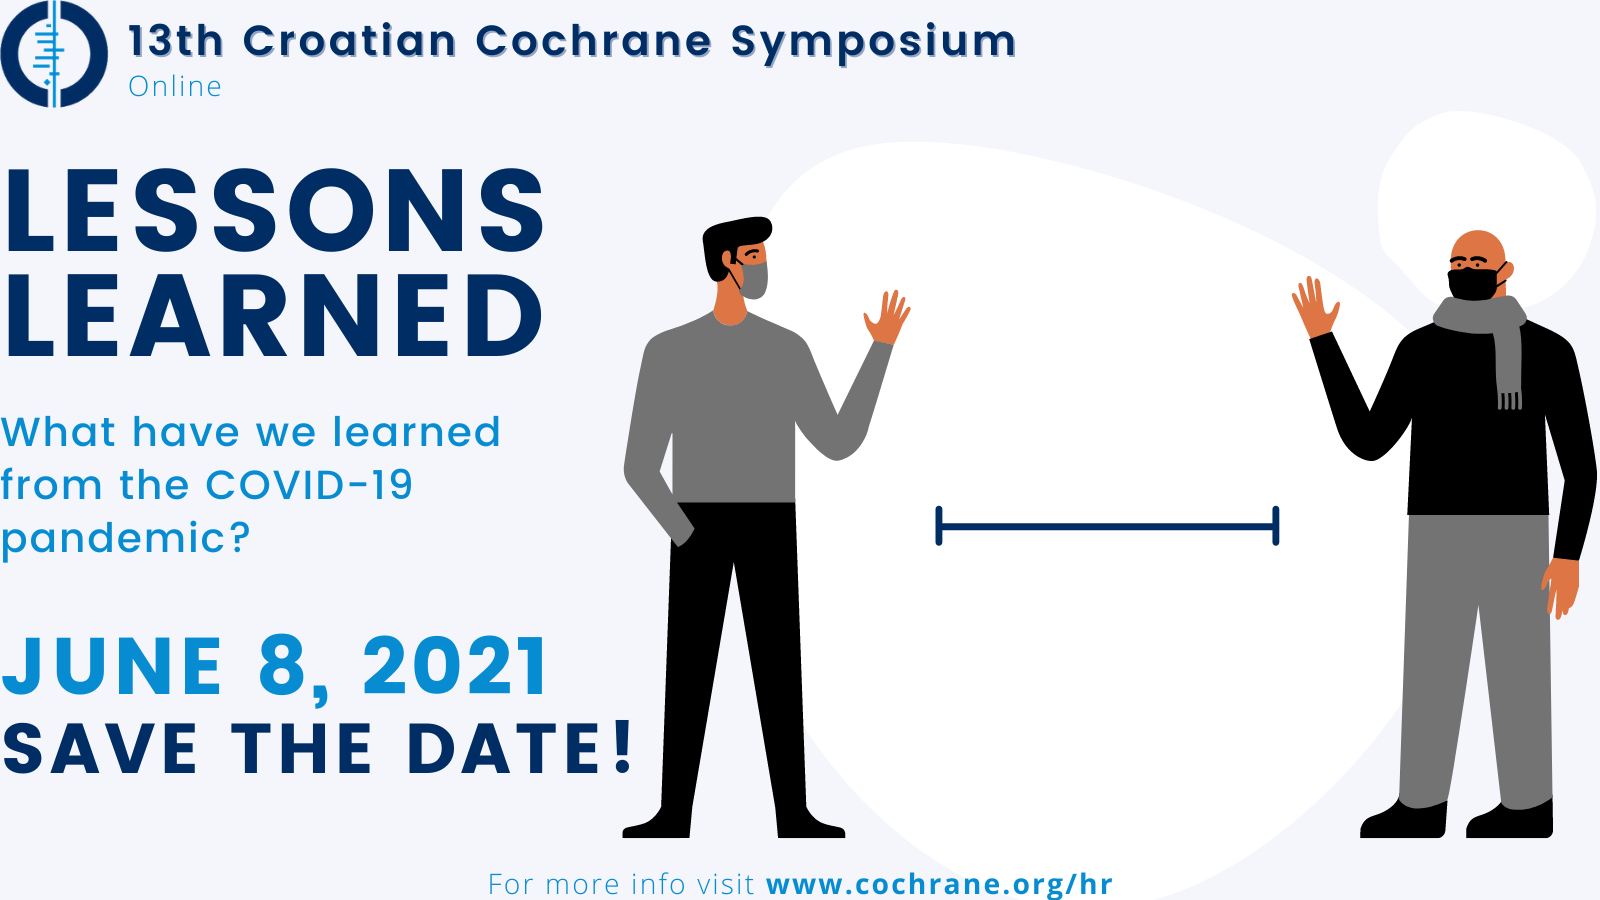 Simpozij hrvatskoga Cochranea Lessons learned - online - 8. lipnja 2021.